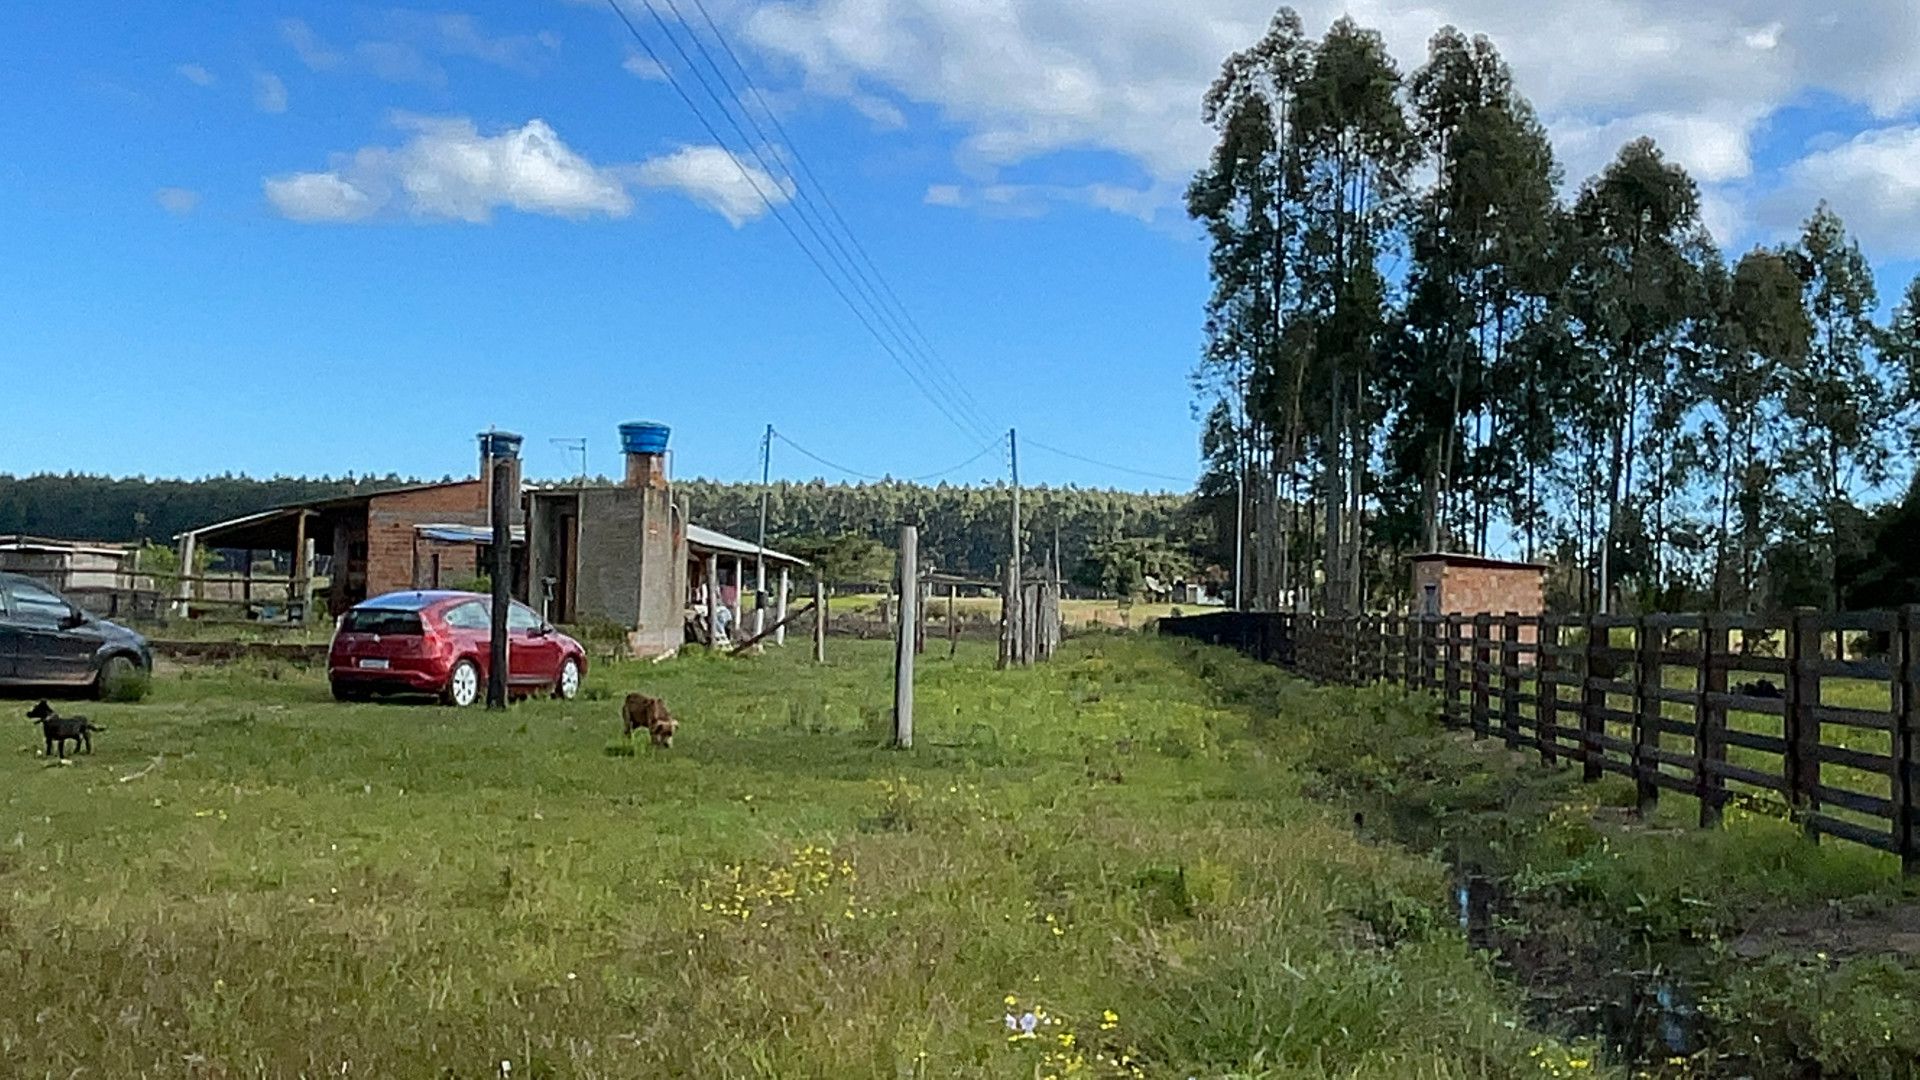 Terreno de 5.000 m² em Santo Antônio da Patrulha, RS